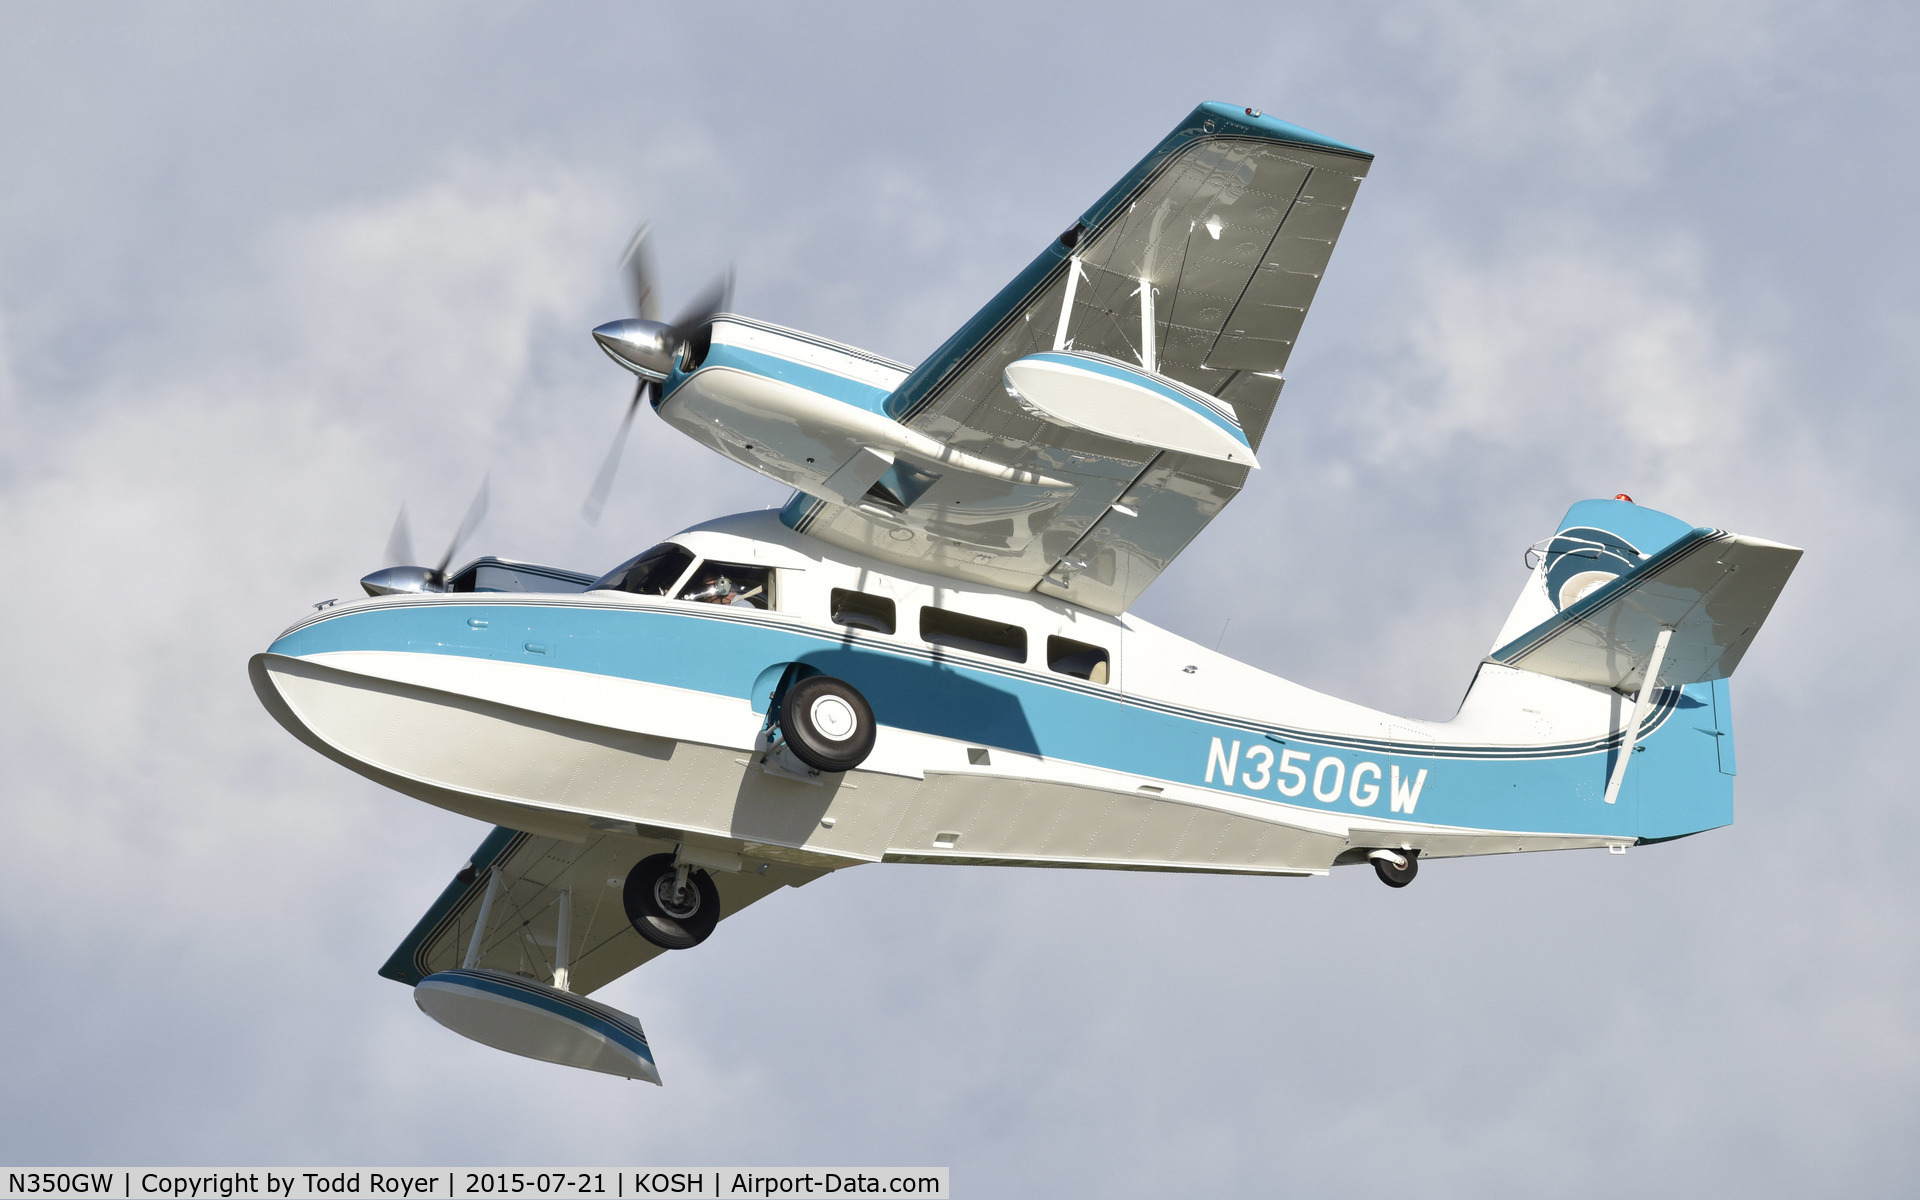 N350GW, 1954 SCAN 30 (G-44A Widgeon) C/N 4, Airventure 2015